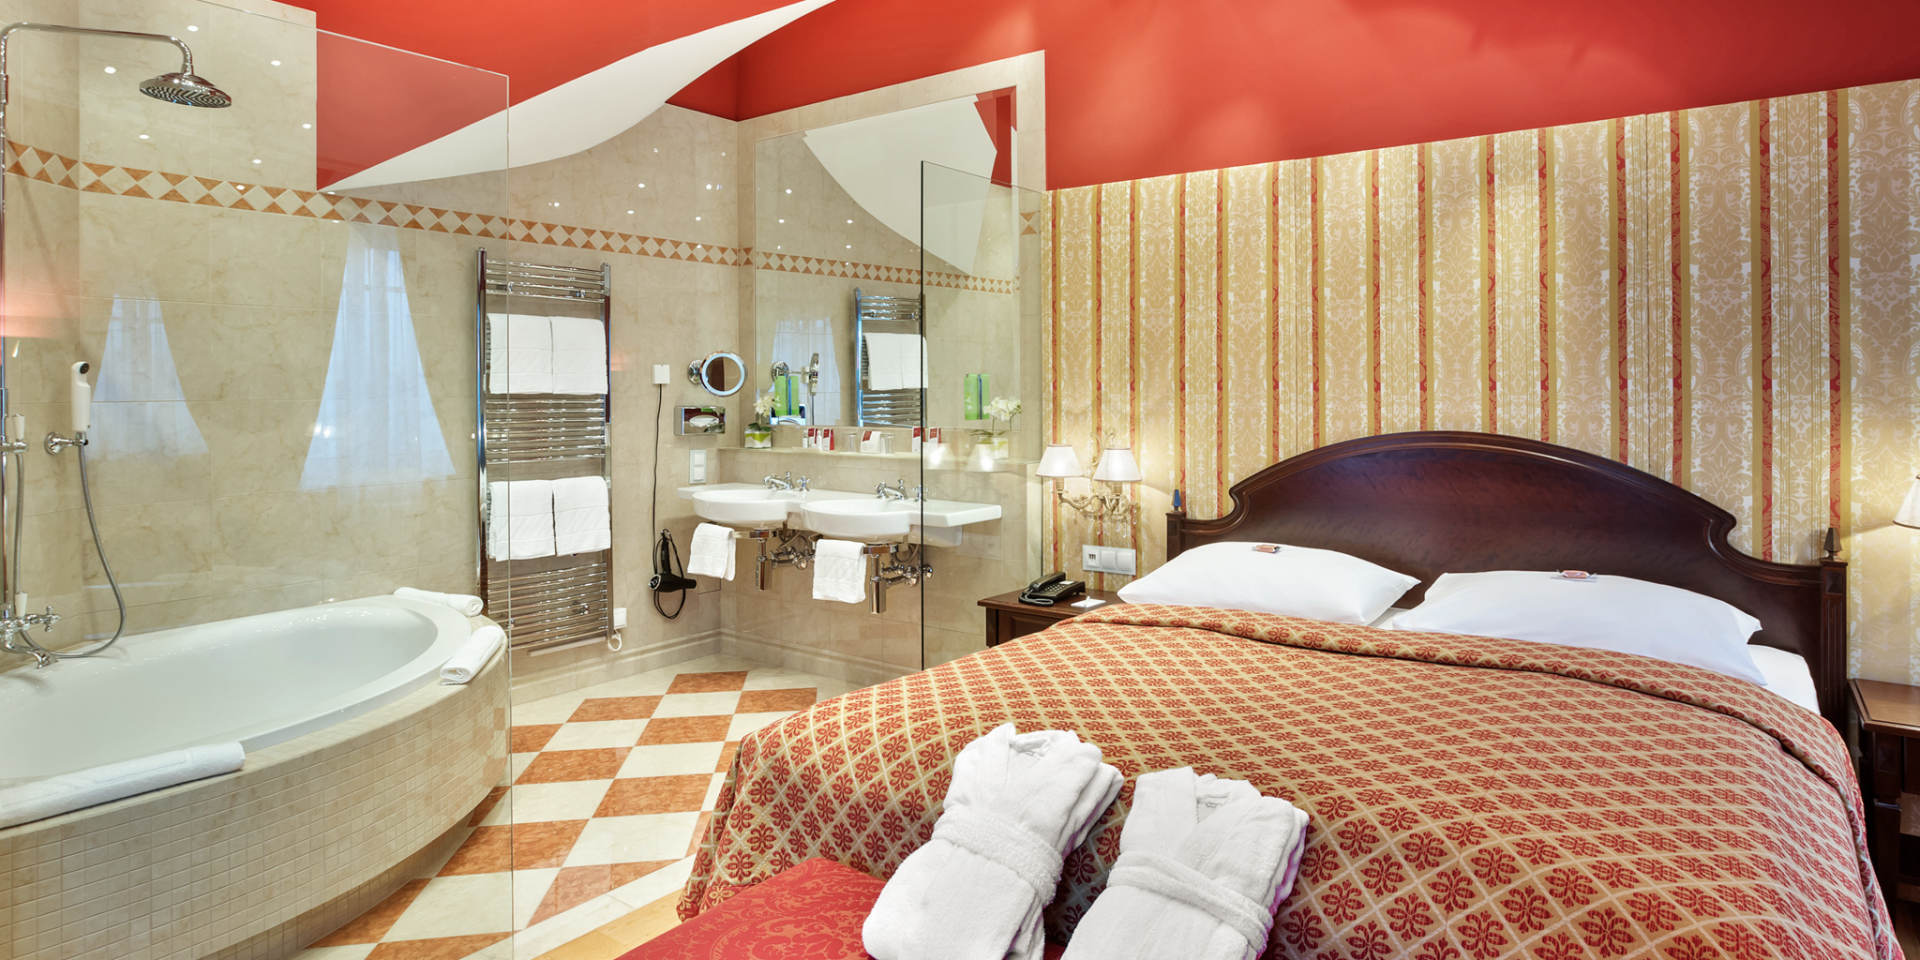 Austria Trend Hotel Ananas - Suite Rossini © Austria Trend Hotels